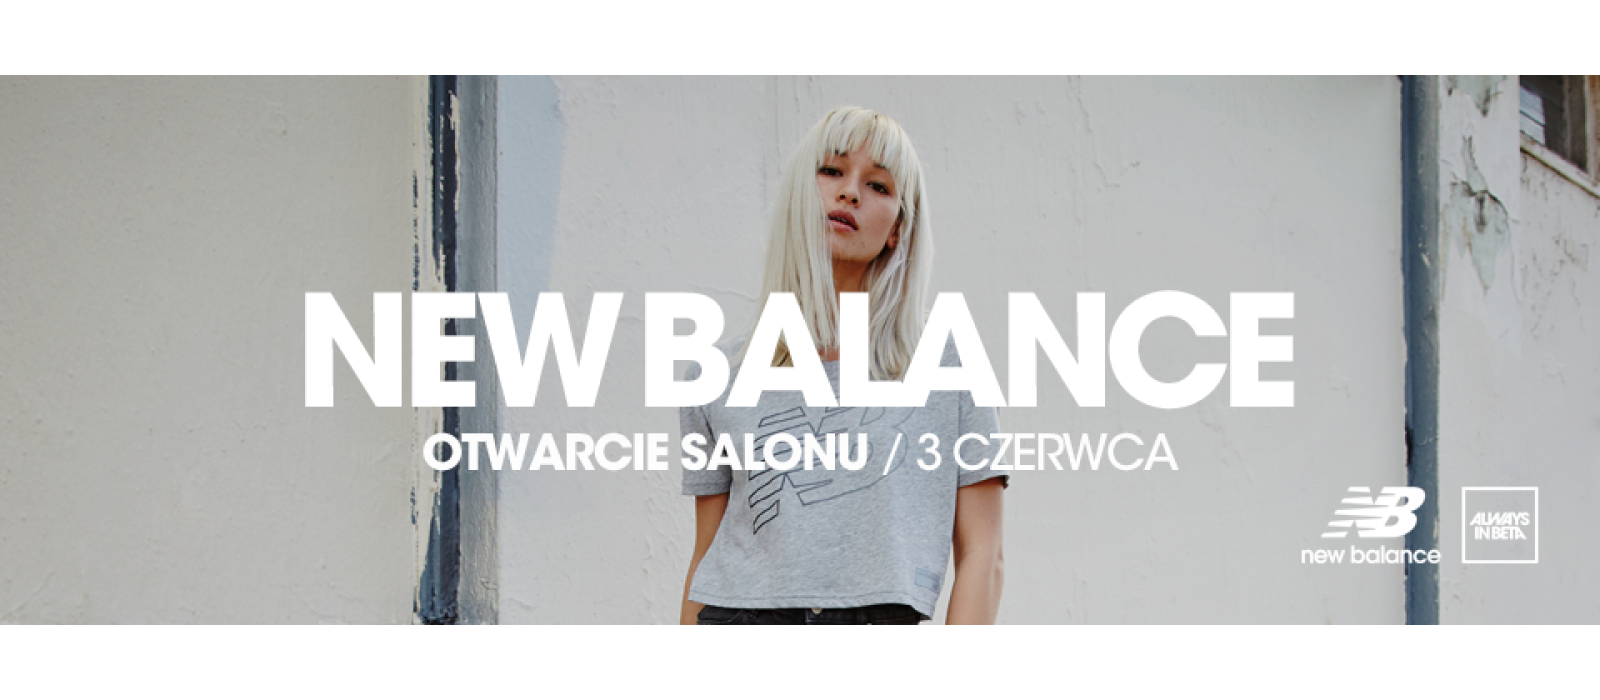 Otwarcie salonu New Balance! - 1